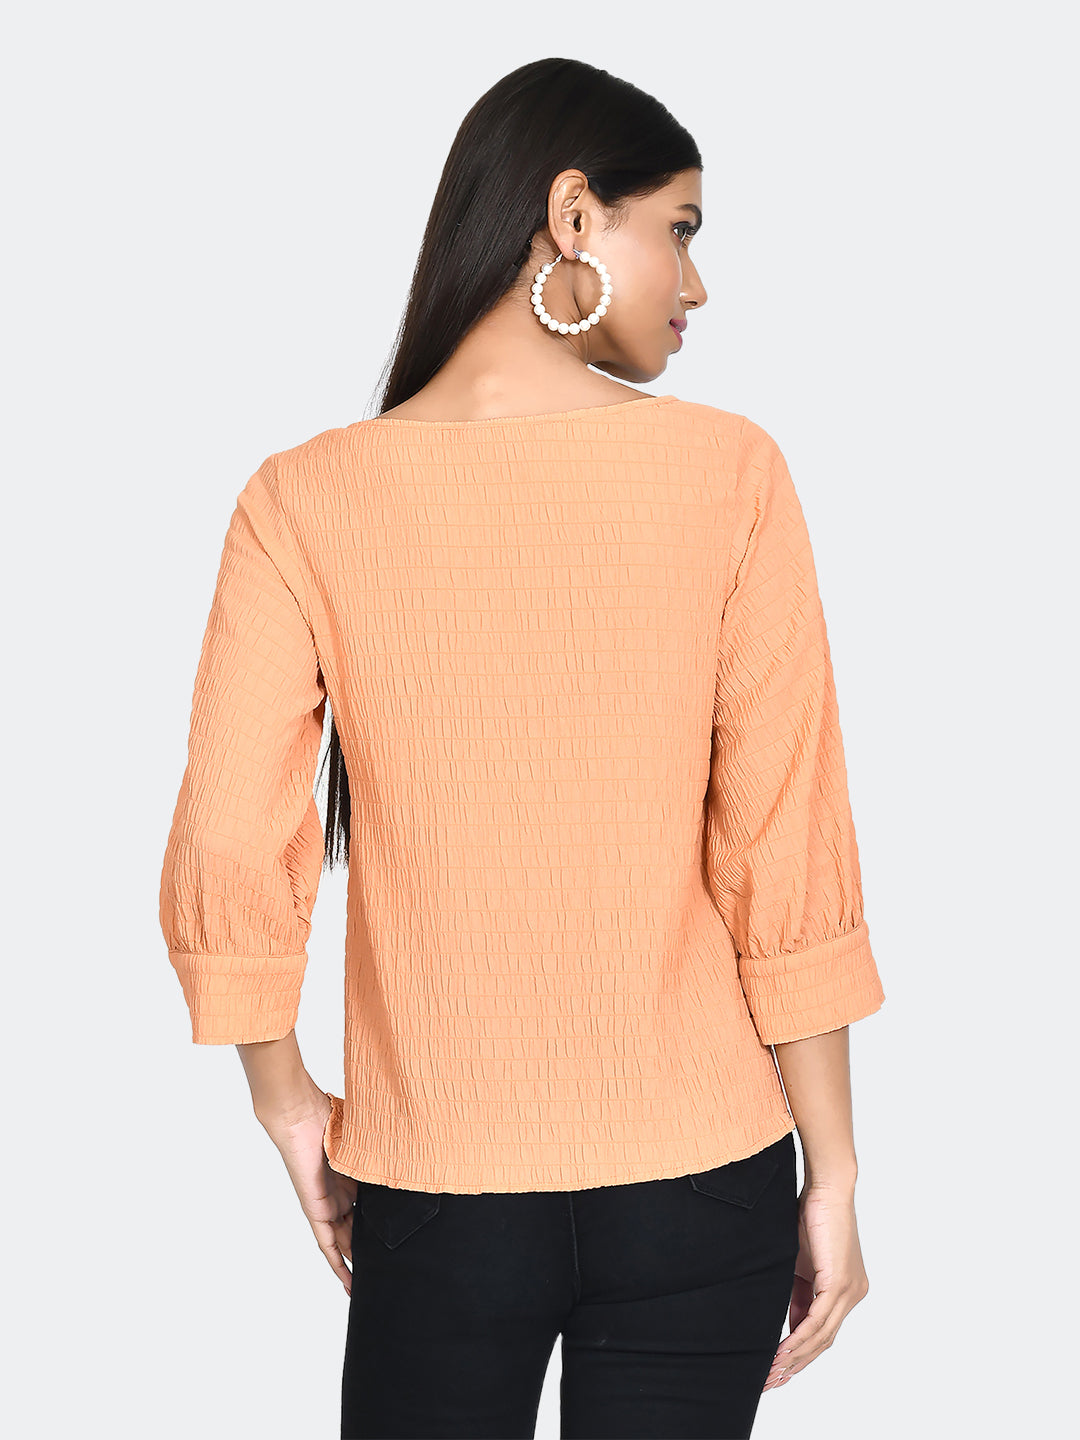 Orange Textured Top For Women